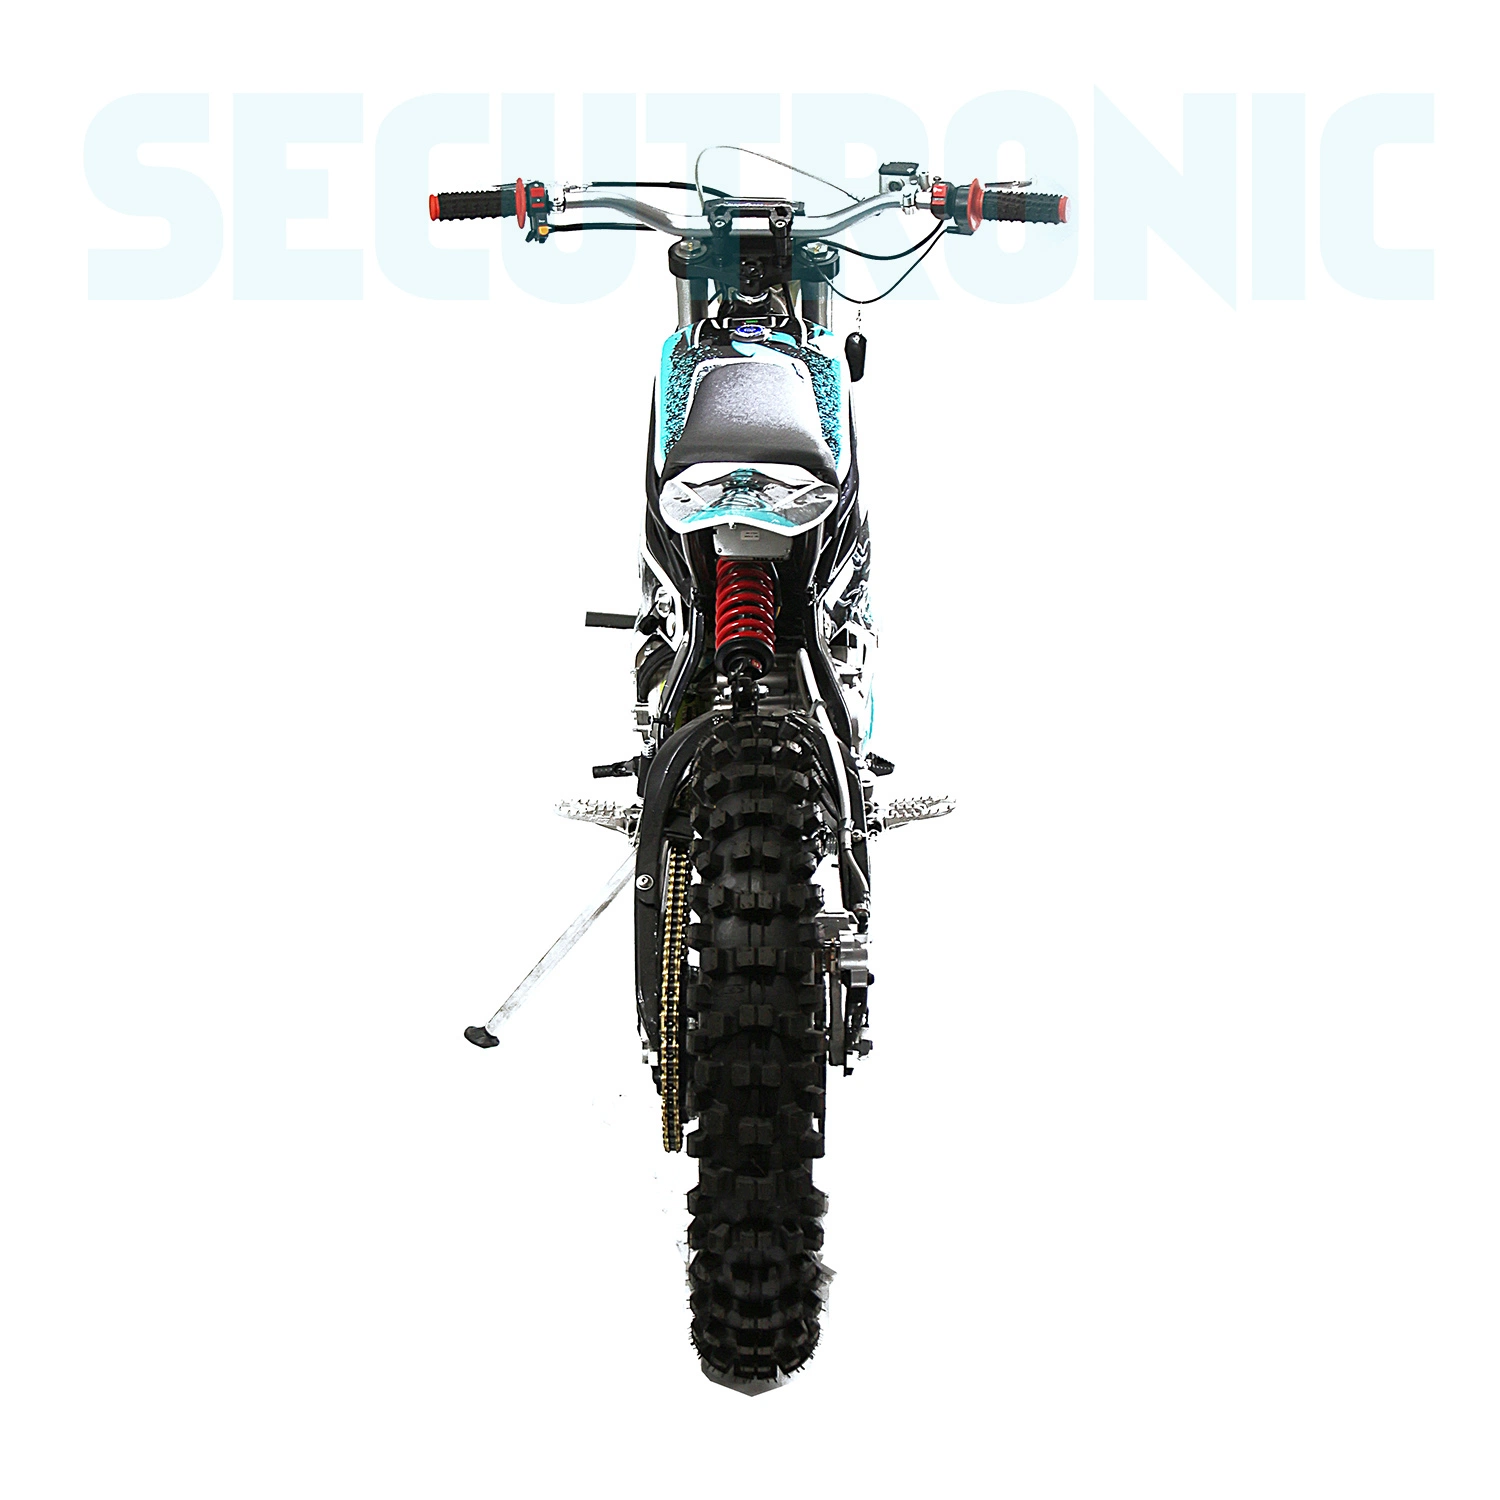 2020 قوية 12kw ايبالدراجة Enduro خارج الطريق الترابية الدراجة البخارية دراجة بخارية كهربائية Electrica Moto Cross للبالغين